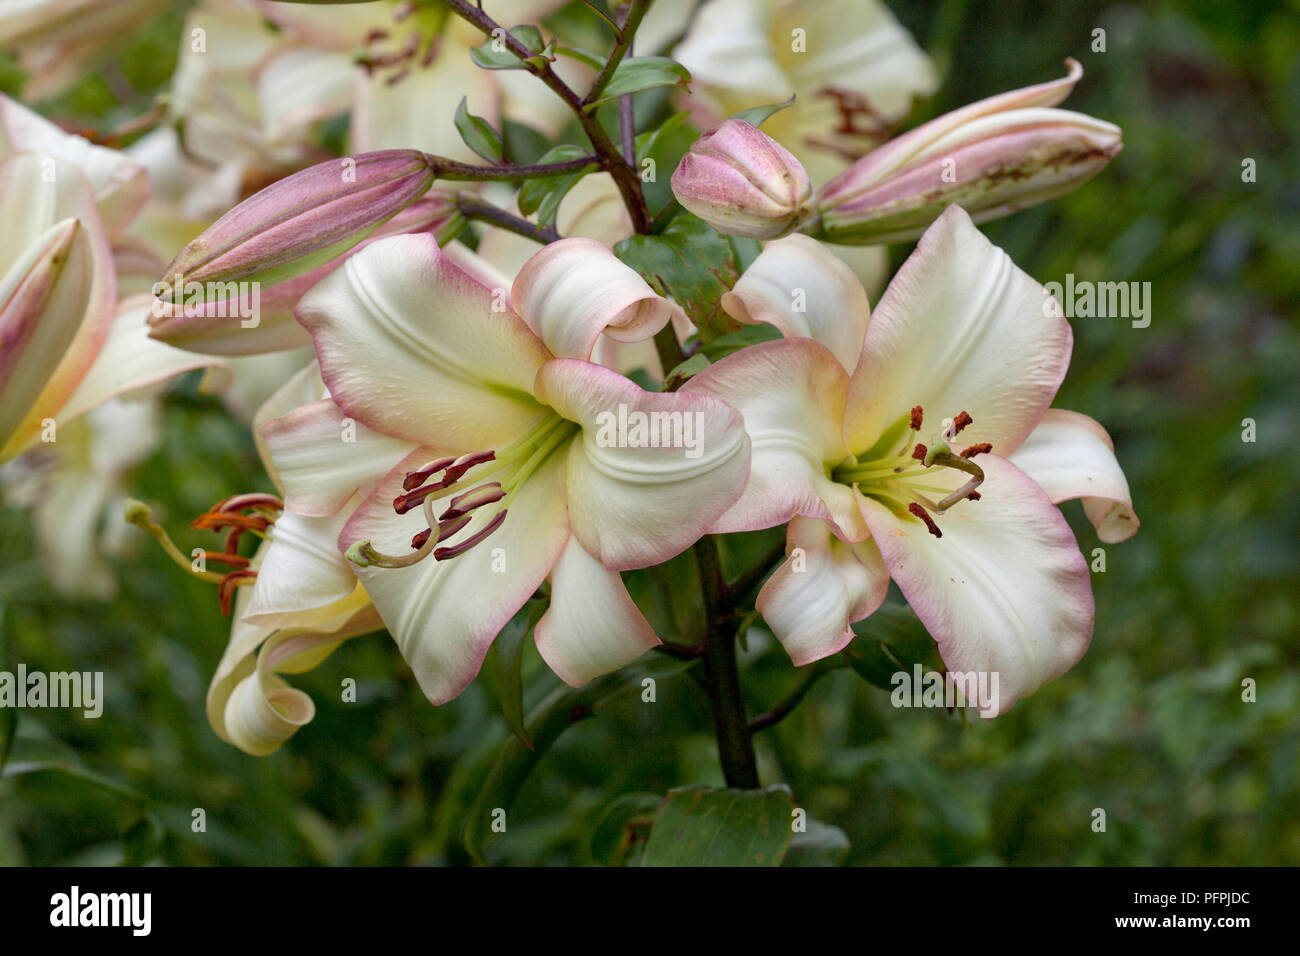 Lilium 'Boogie Woogie', trompette orientale lily, blanc crème et rose fleurs, close-up Banque D'Images